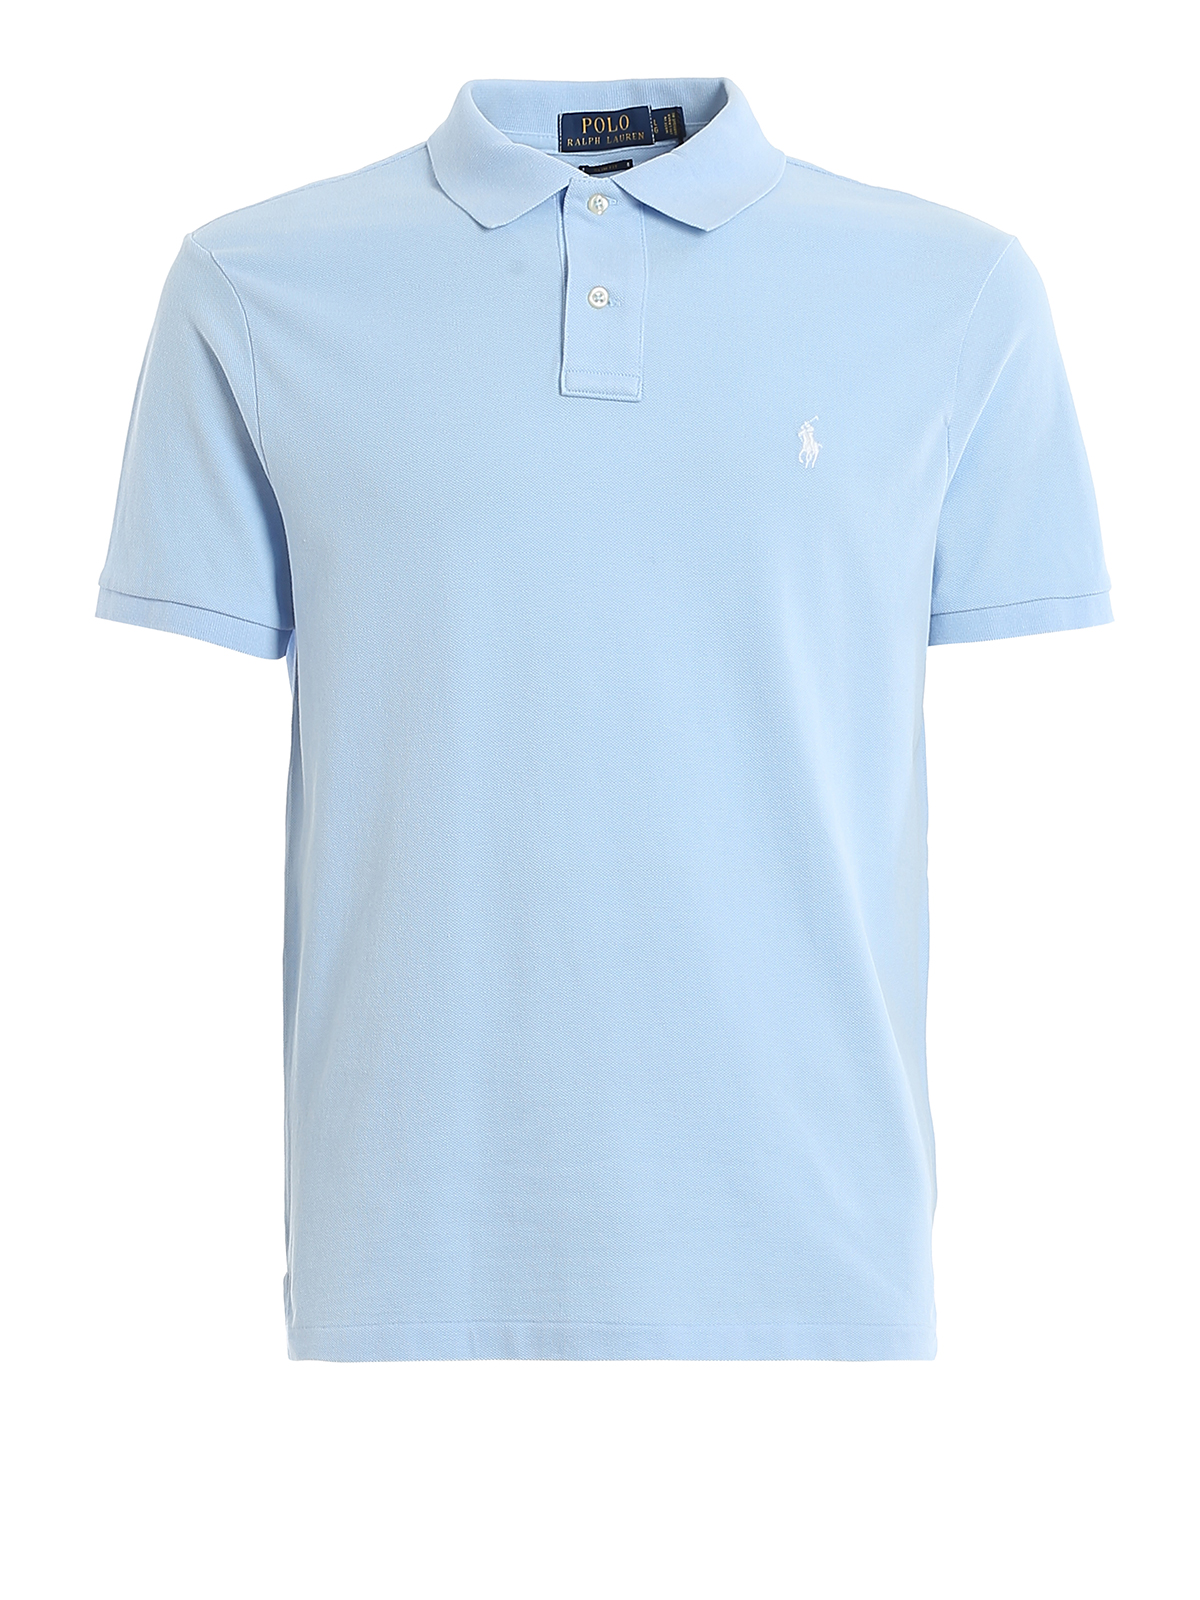 Lauren slim blue 710795080016 Polo shirts polo - - cotton pique Ralph Light Polo fit